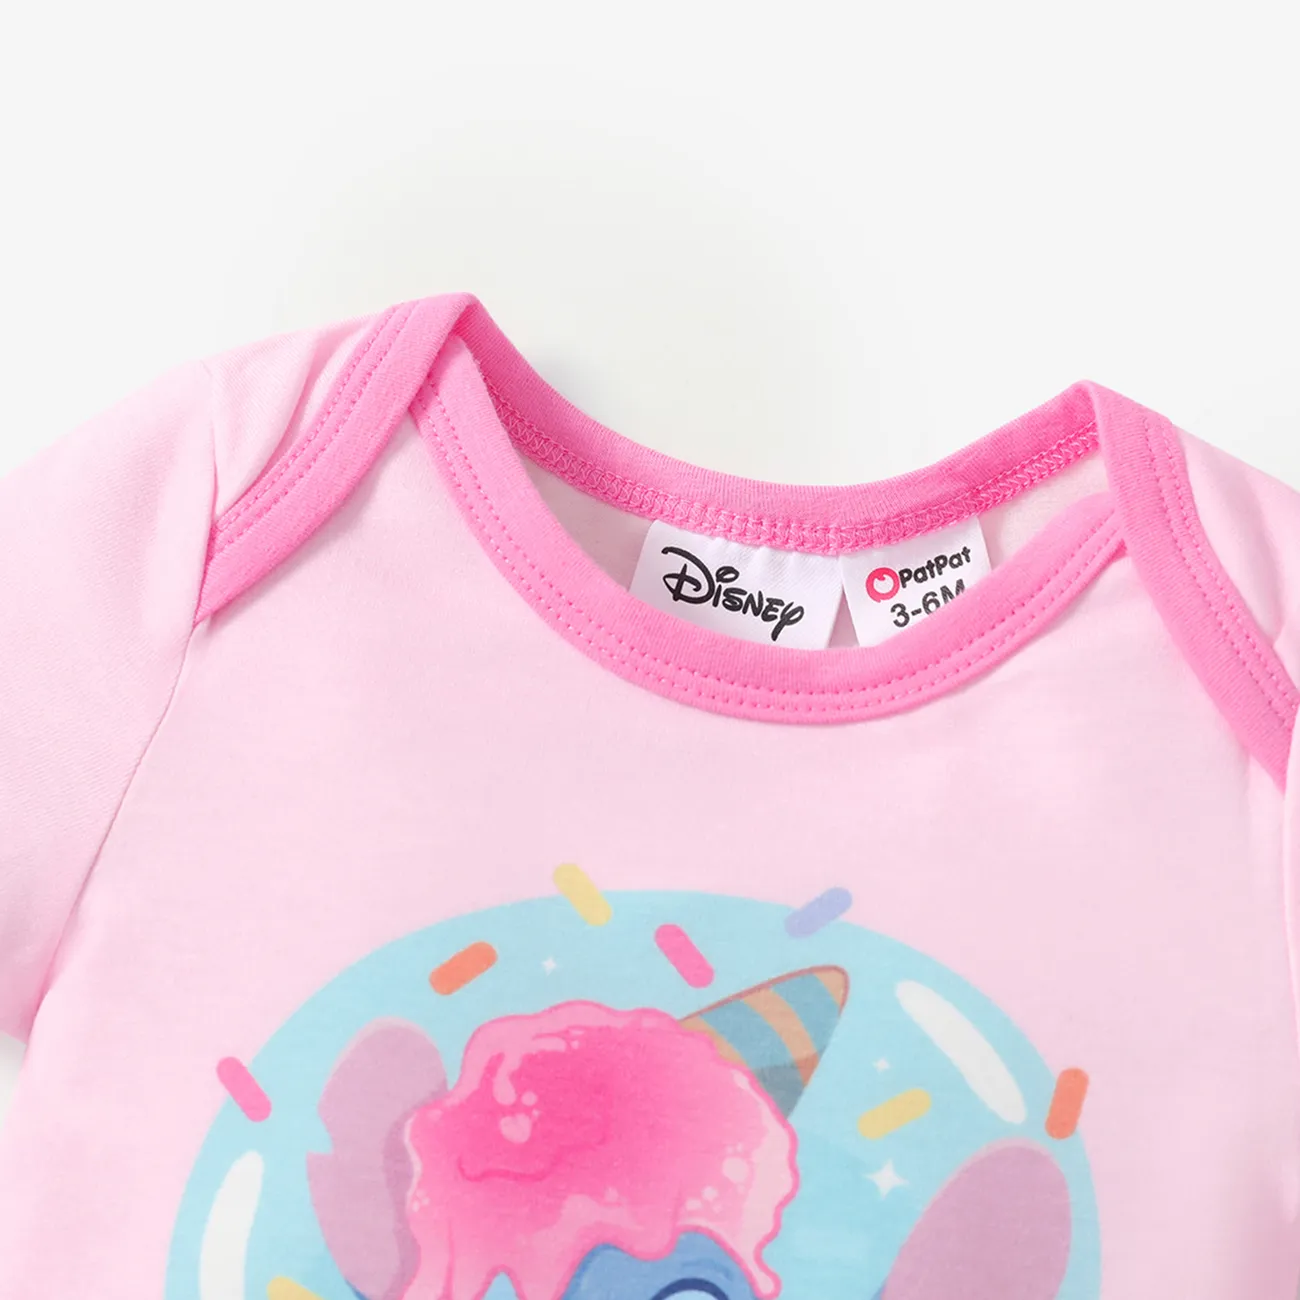 迪士尼針跡 嬰兒 女 甜美 短袖 連身衣 粉色 big image 1